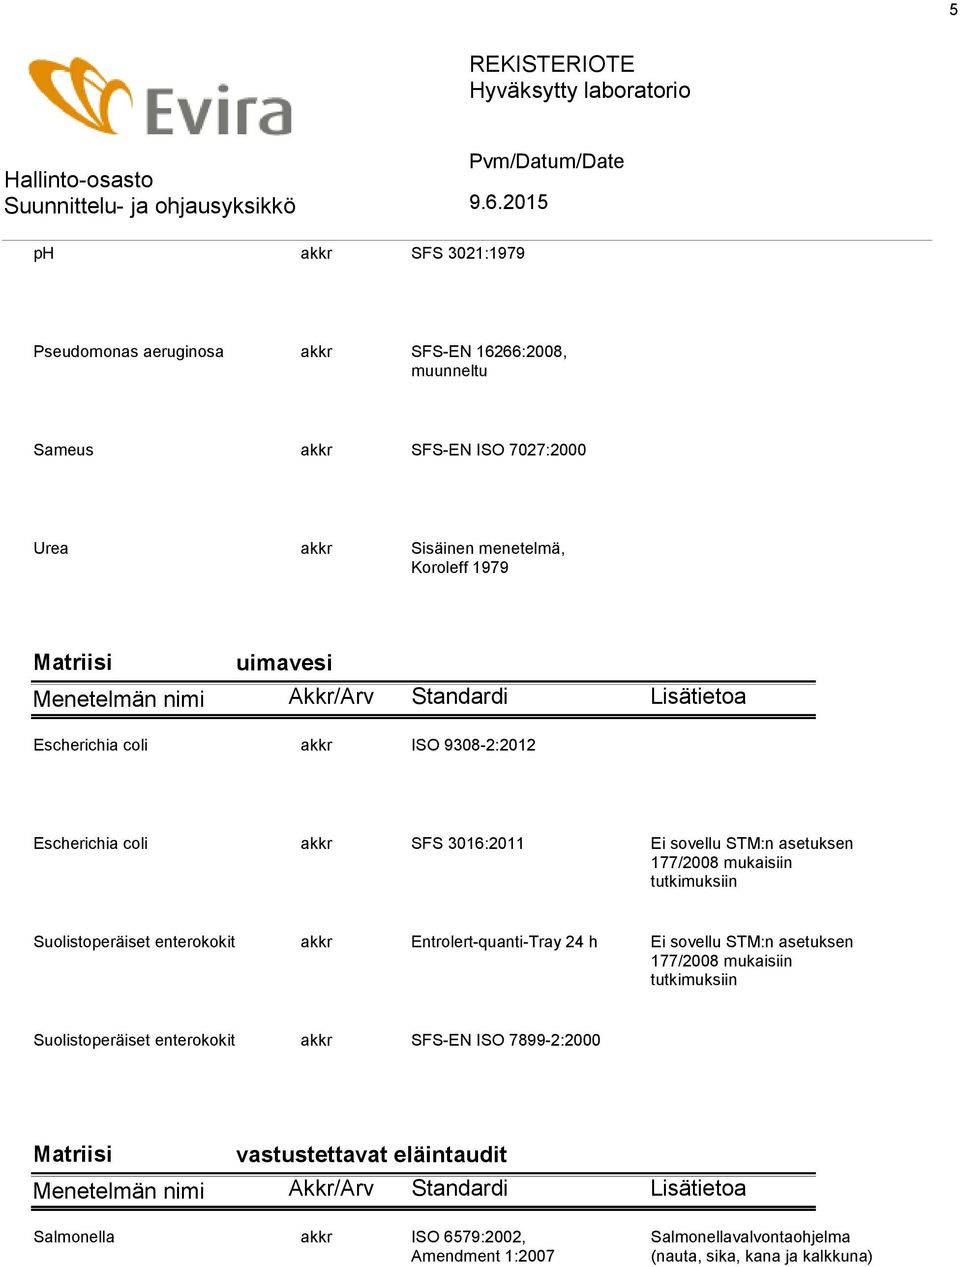 Suolistoperäiset enterokokit akkr Entrolert-quanti-Tray 24 h Ei sovellu STM:n asetuksen 177/2008 mukaisiin tutkimuksiin Suolistoperäiset enterokokit